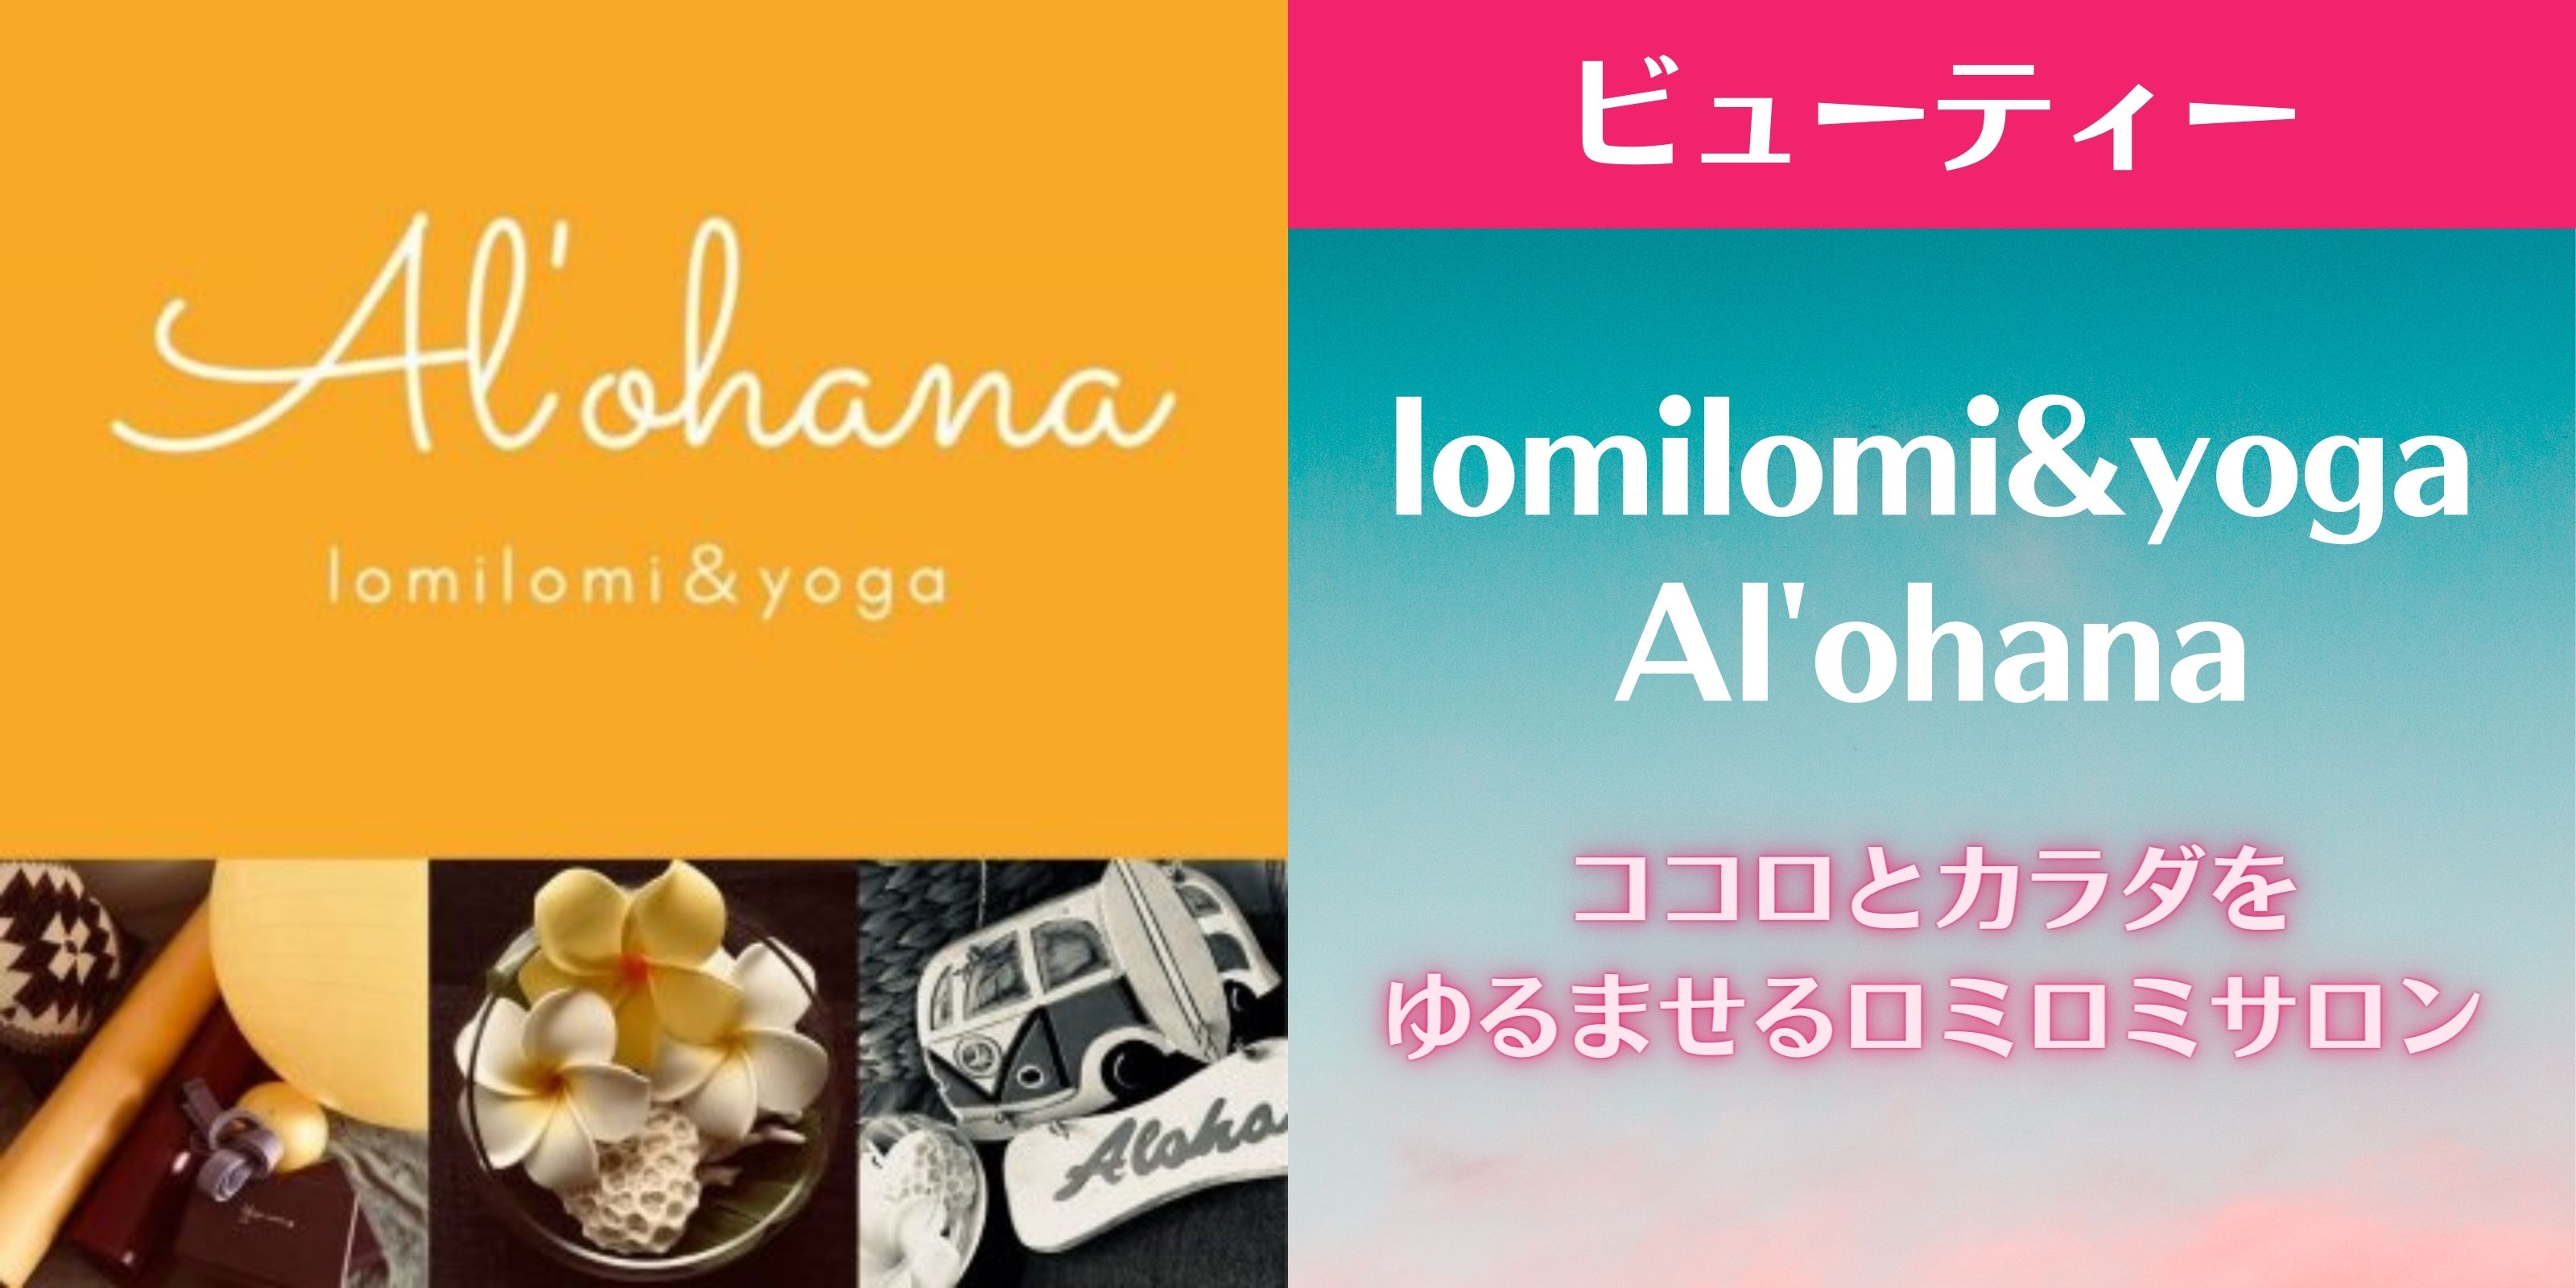 【 lomilomi&yoga Al'ohana 】 アロハナ ココロとカラダをゆるませるロミロミサロン